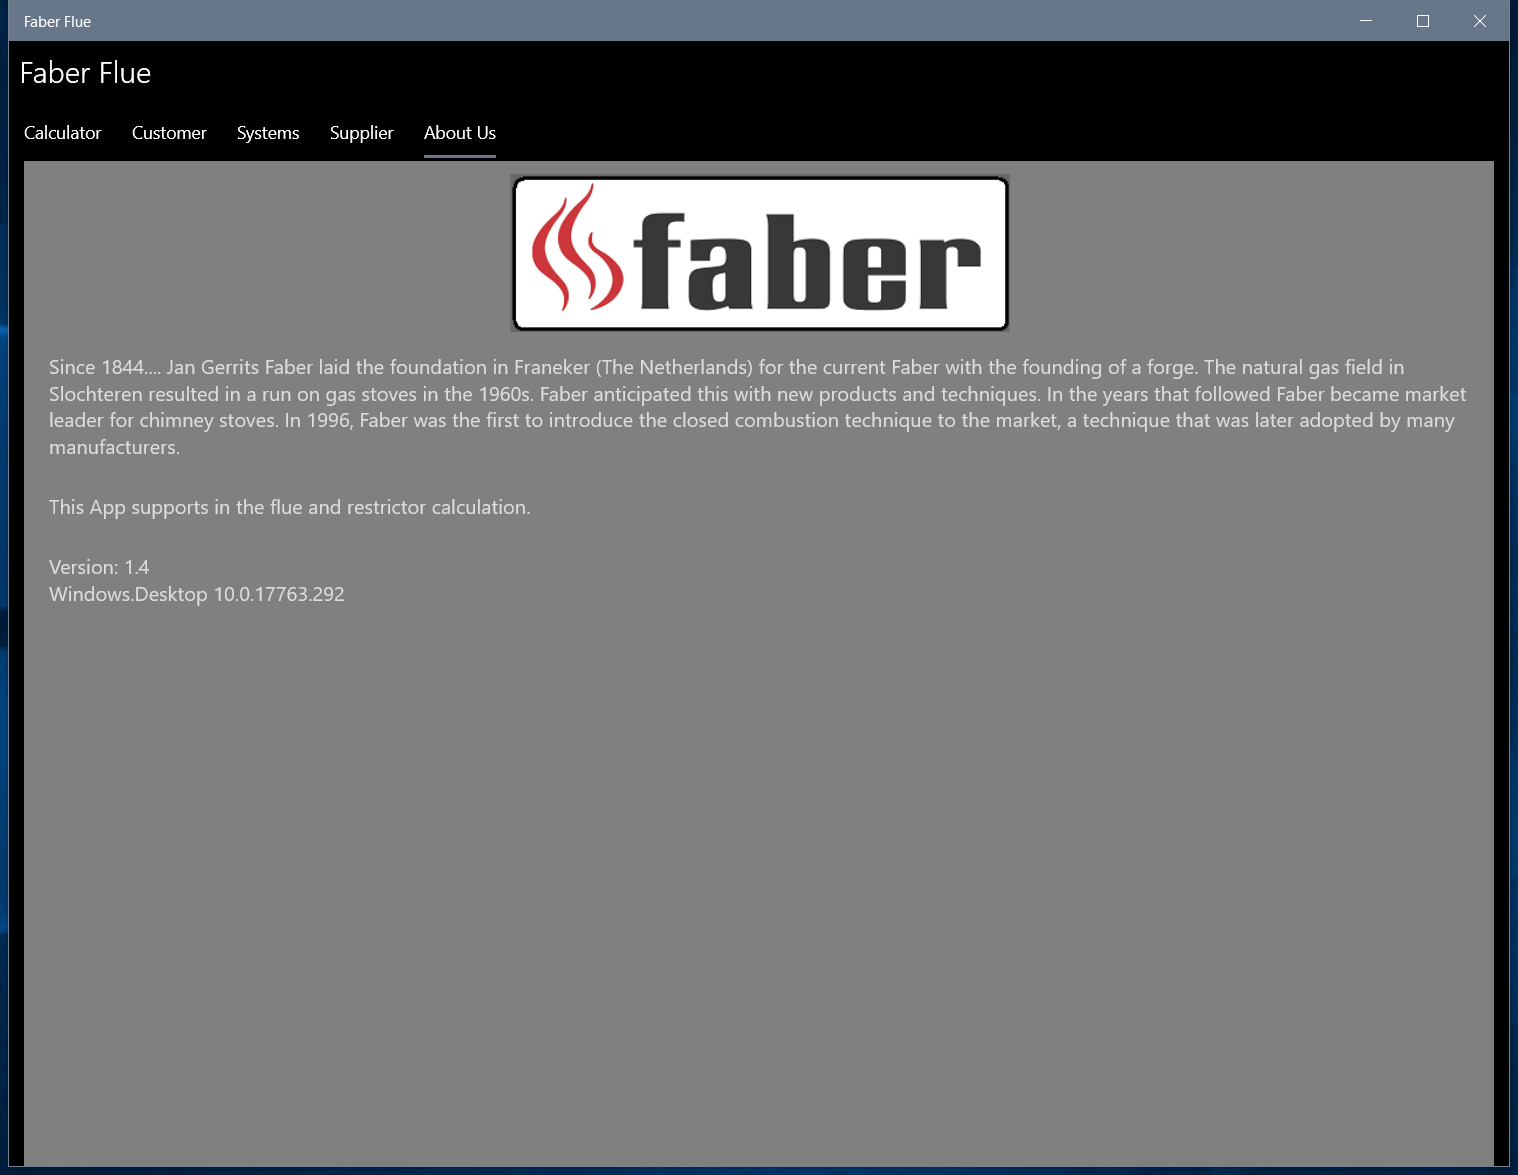 Faber Flue